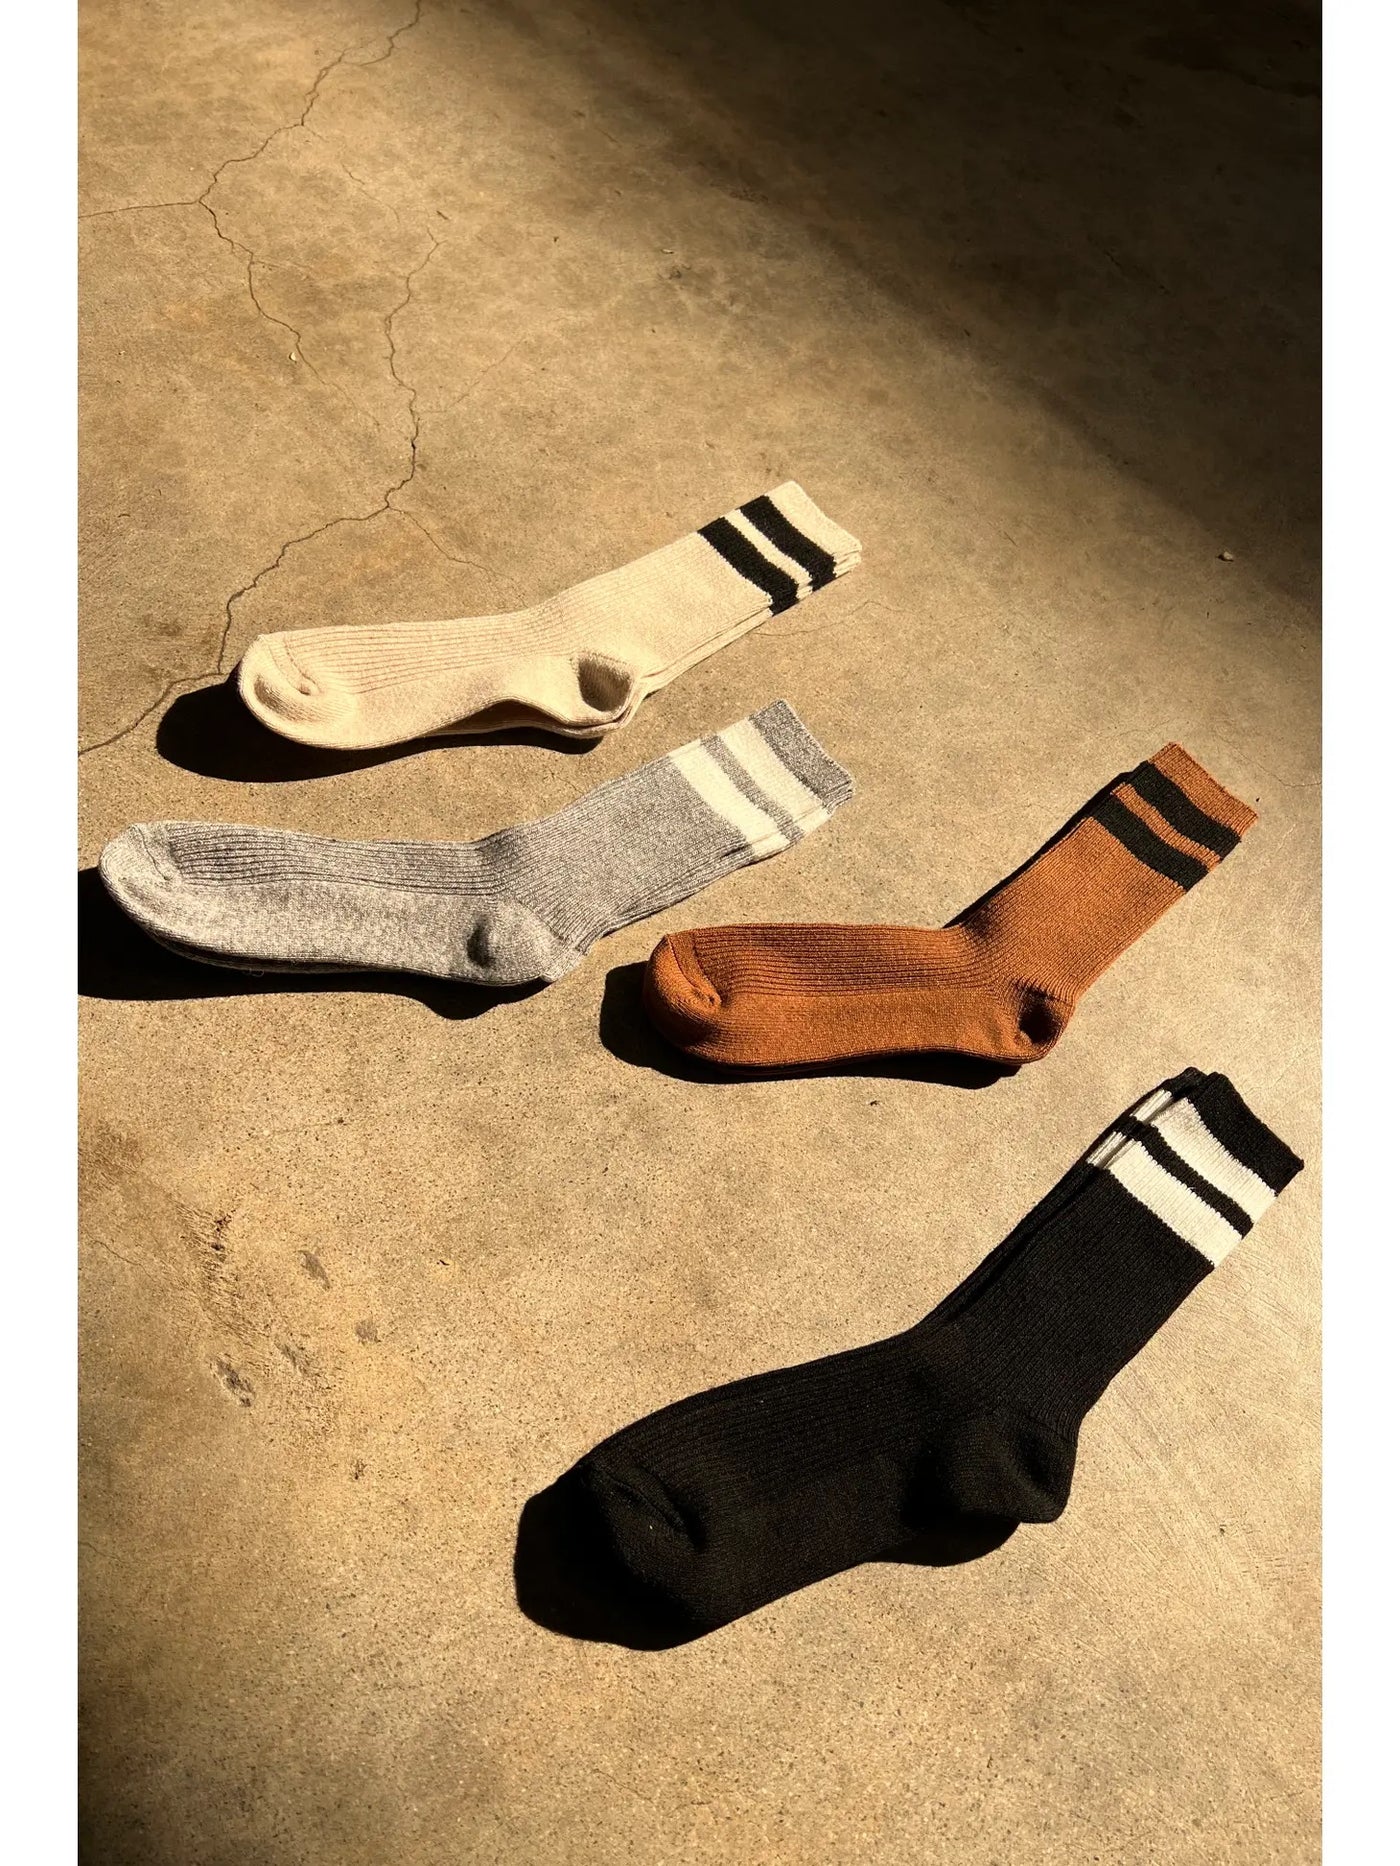 Le Bon Shoppe Grandpa Varsity Socks in Tawny/Black Stripe